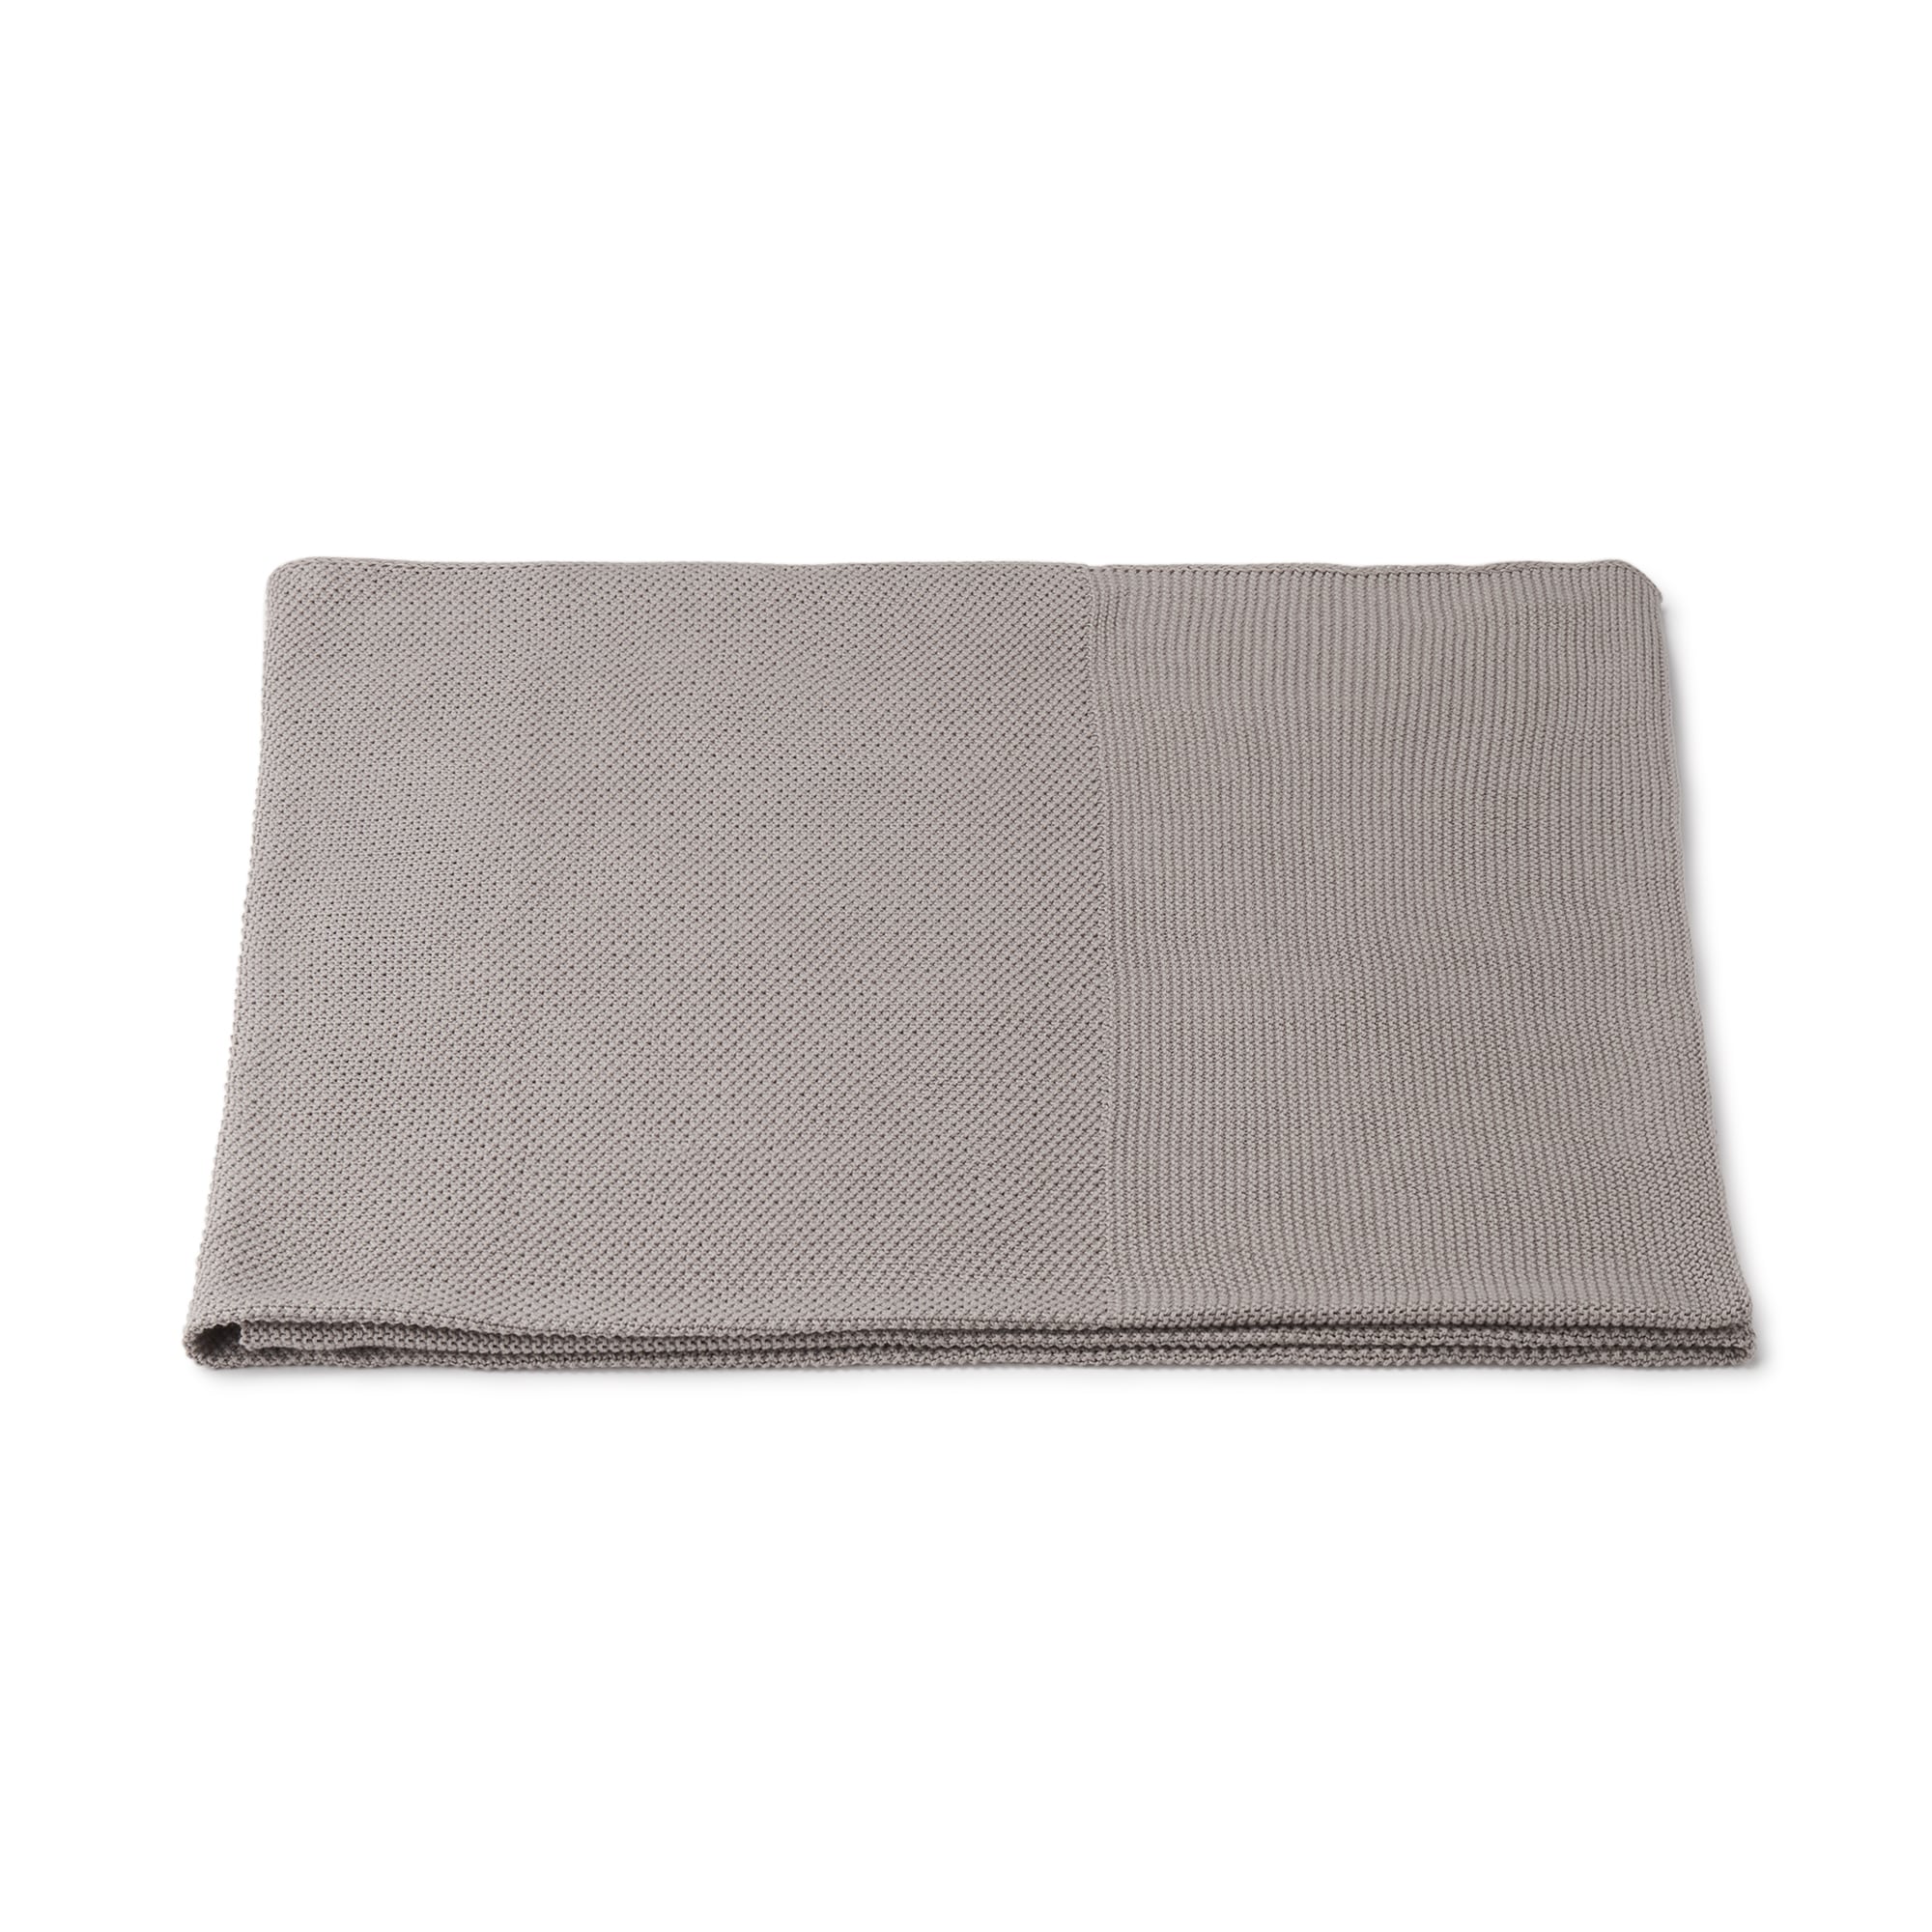 무인양품 일본 면니트 담요 블랭킷 100×180cm 그레이